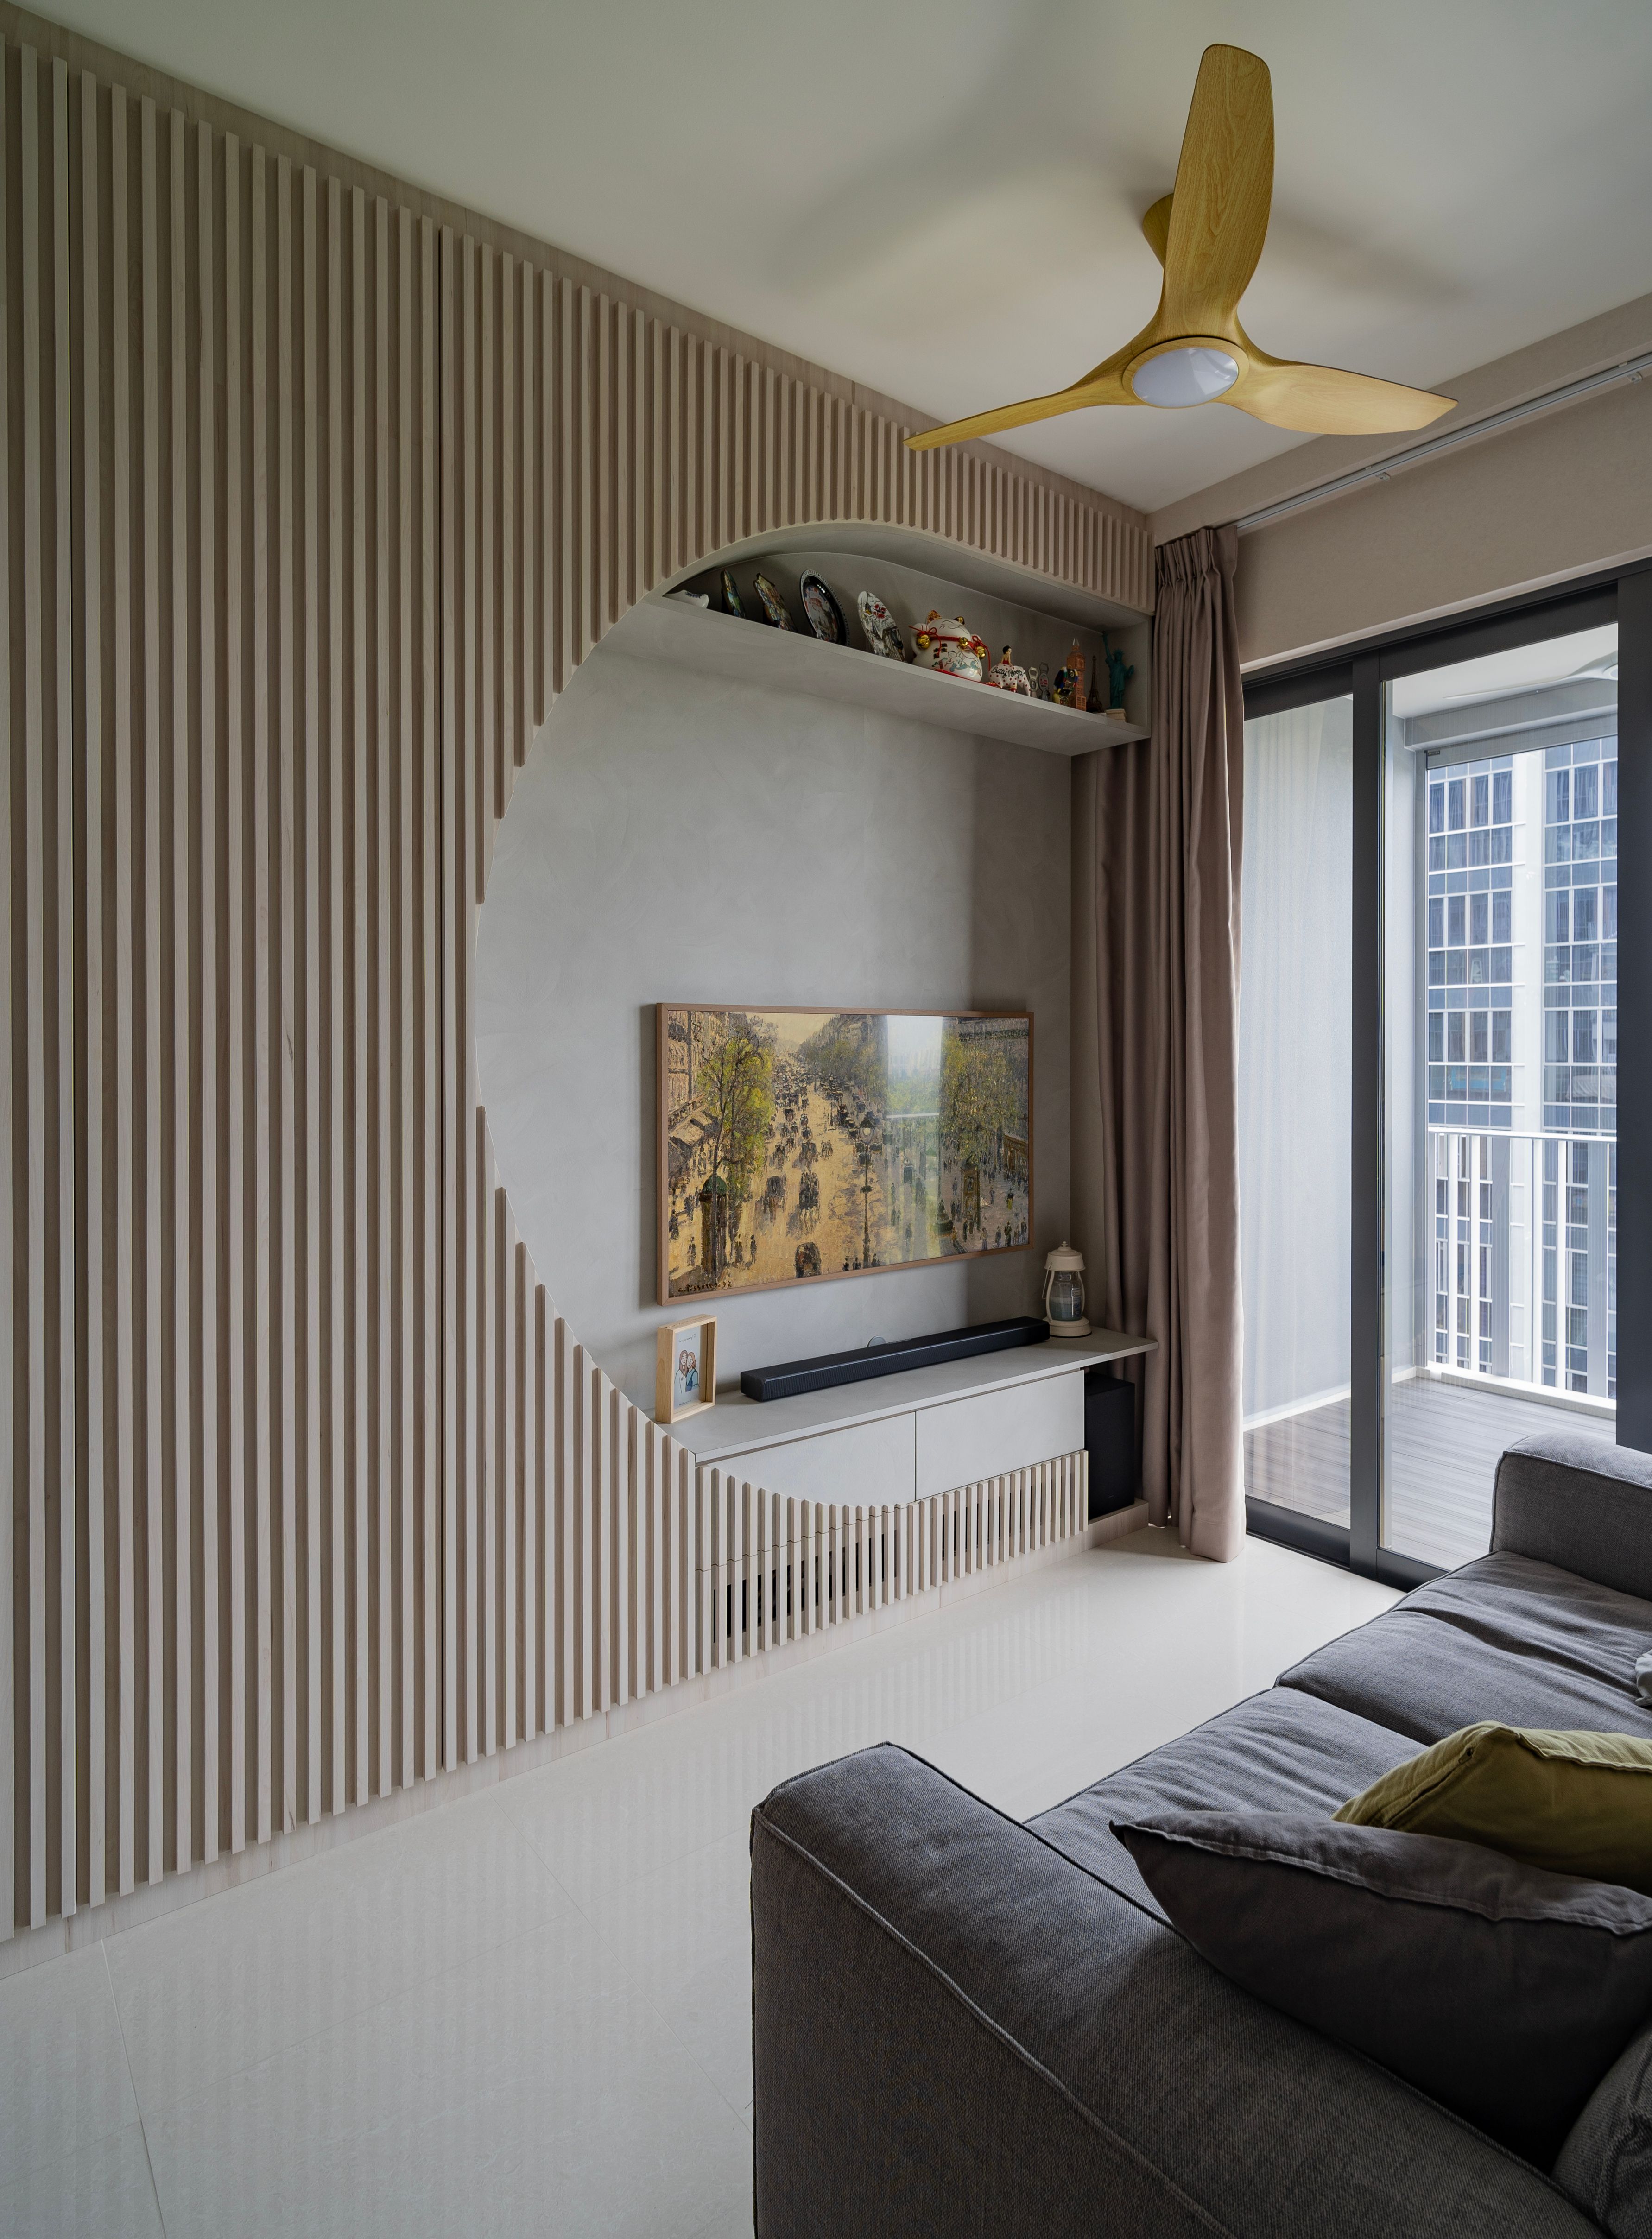 Japandi living room with minimalist furniture